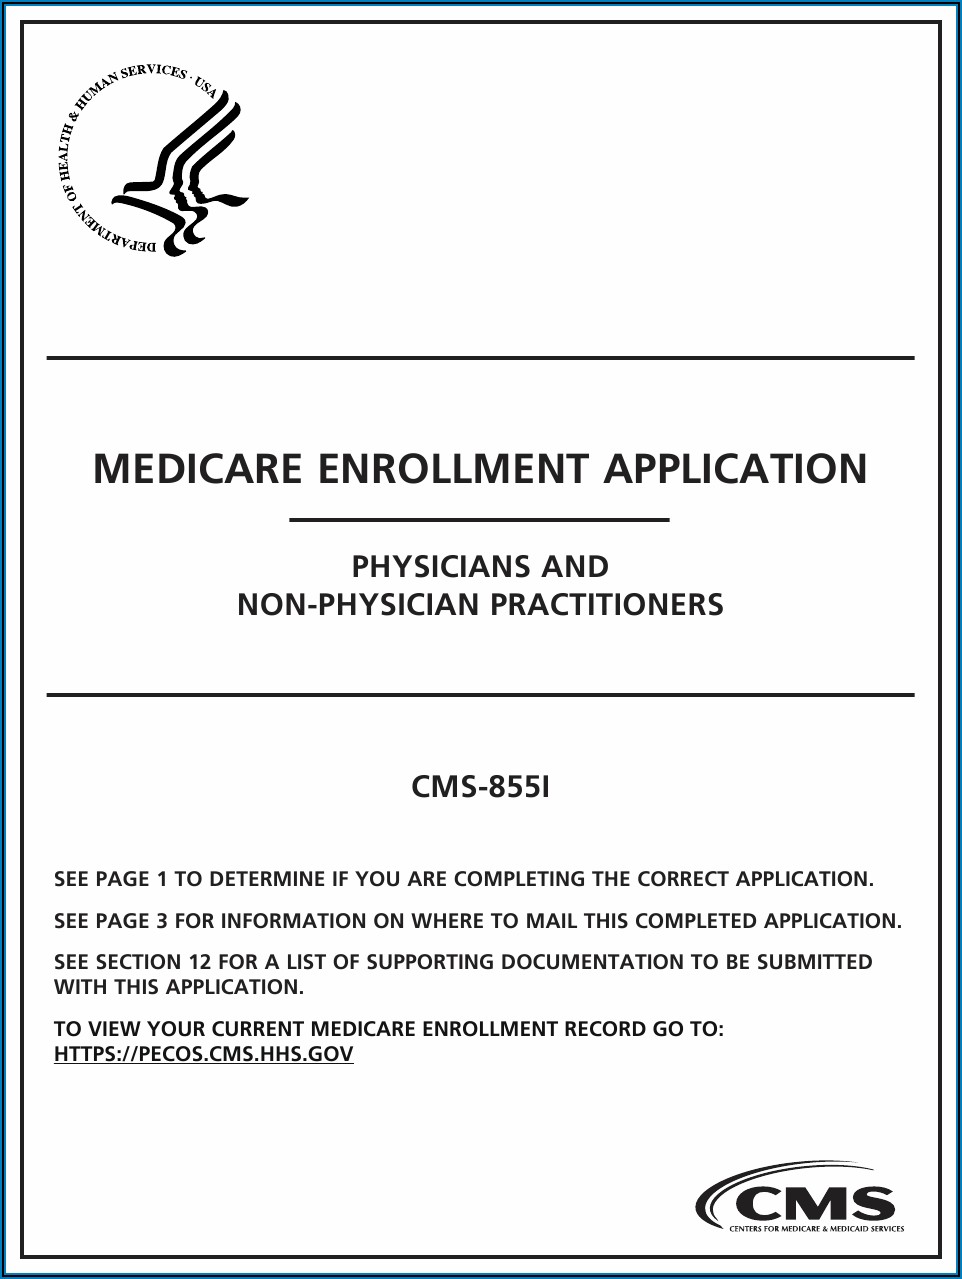 Medicare Enrollment Application Form Pdf